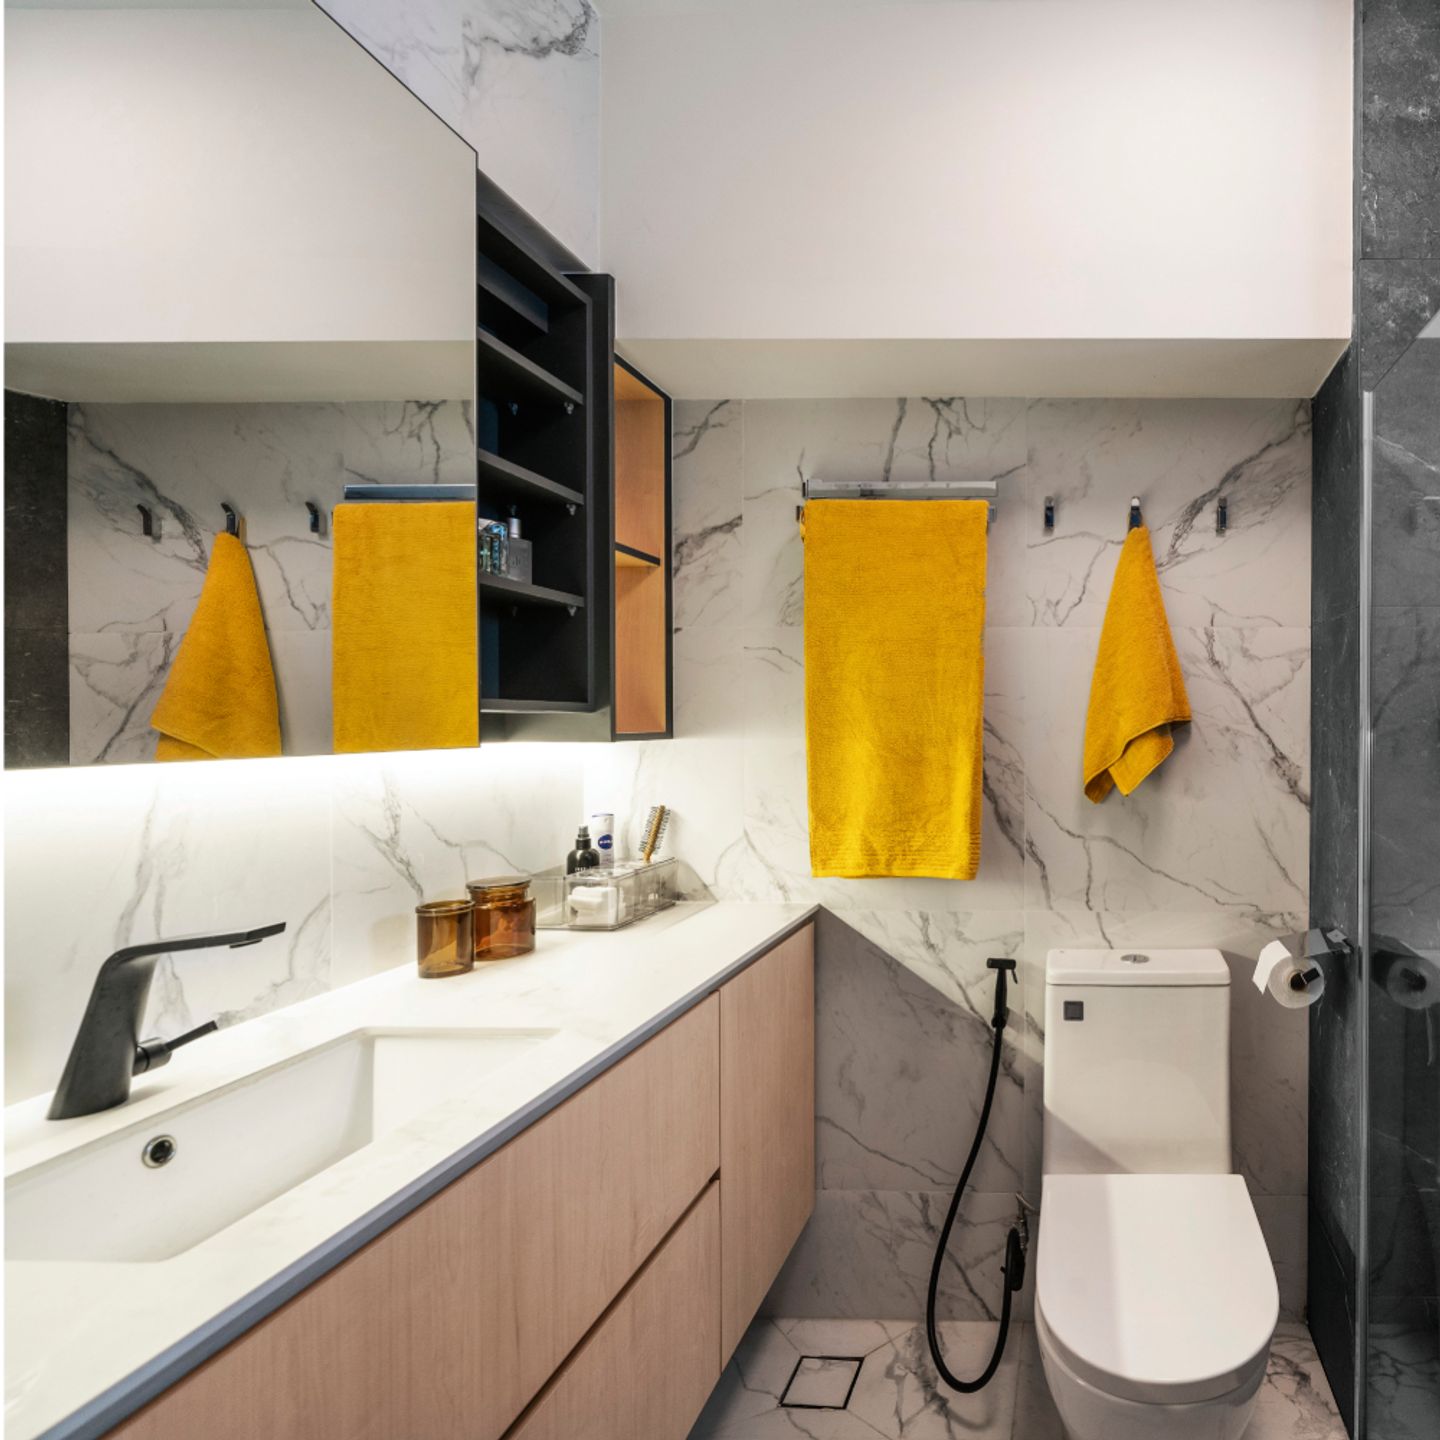 Marble Bathroom Design With Maximum Storage - Livspace